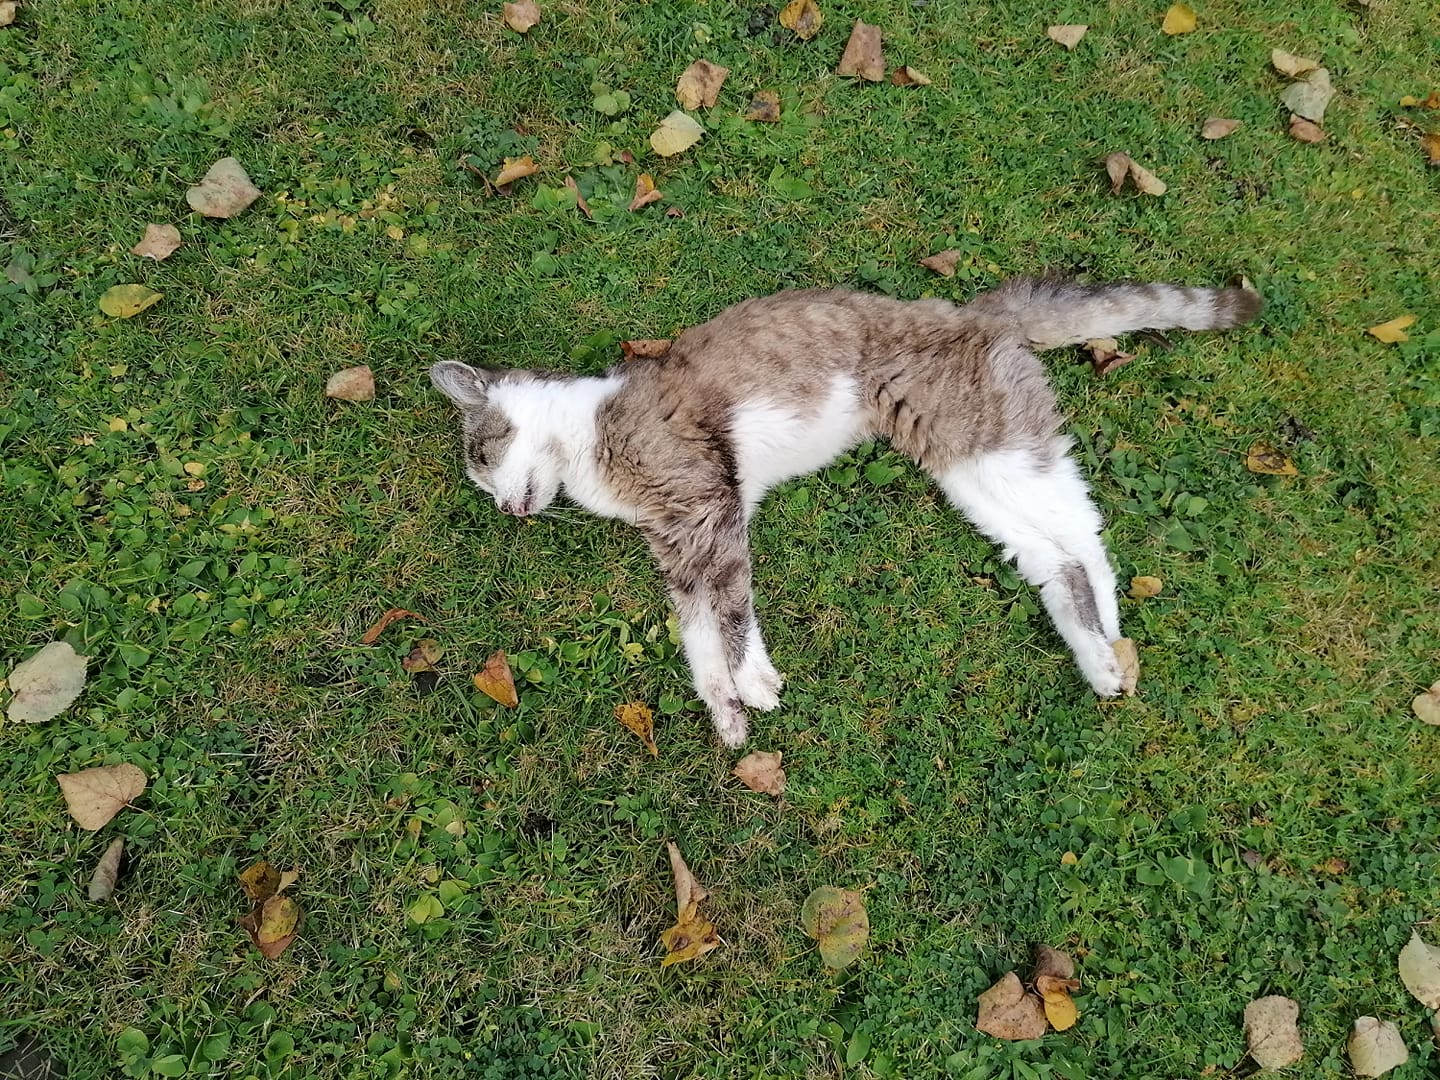 Eine 5-Minuten-Leserin fand gestern die stark geschwächte Katze in ihrem Garten und informierte die Tierrettung.